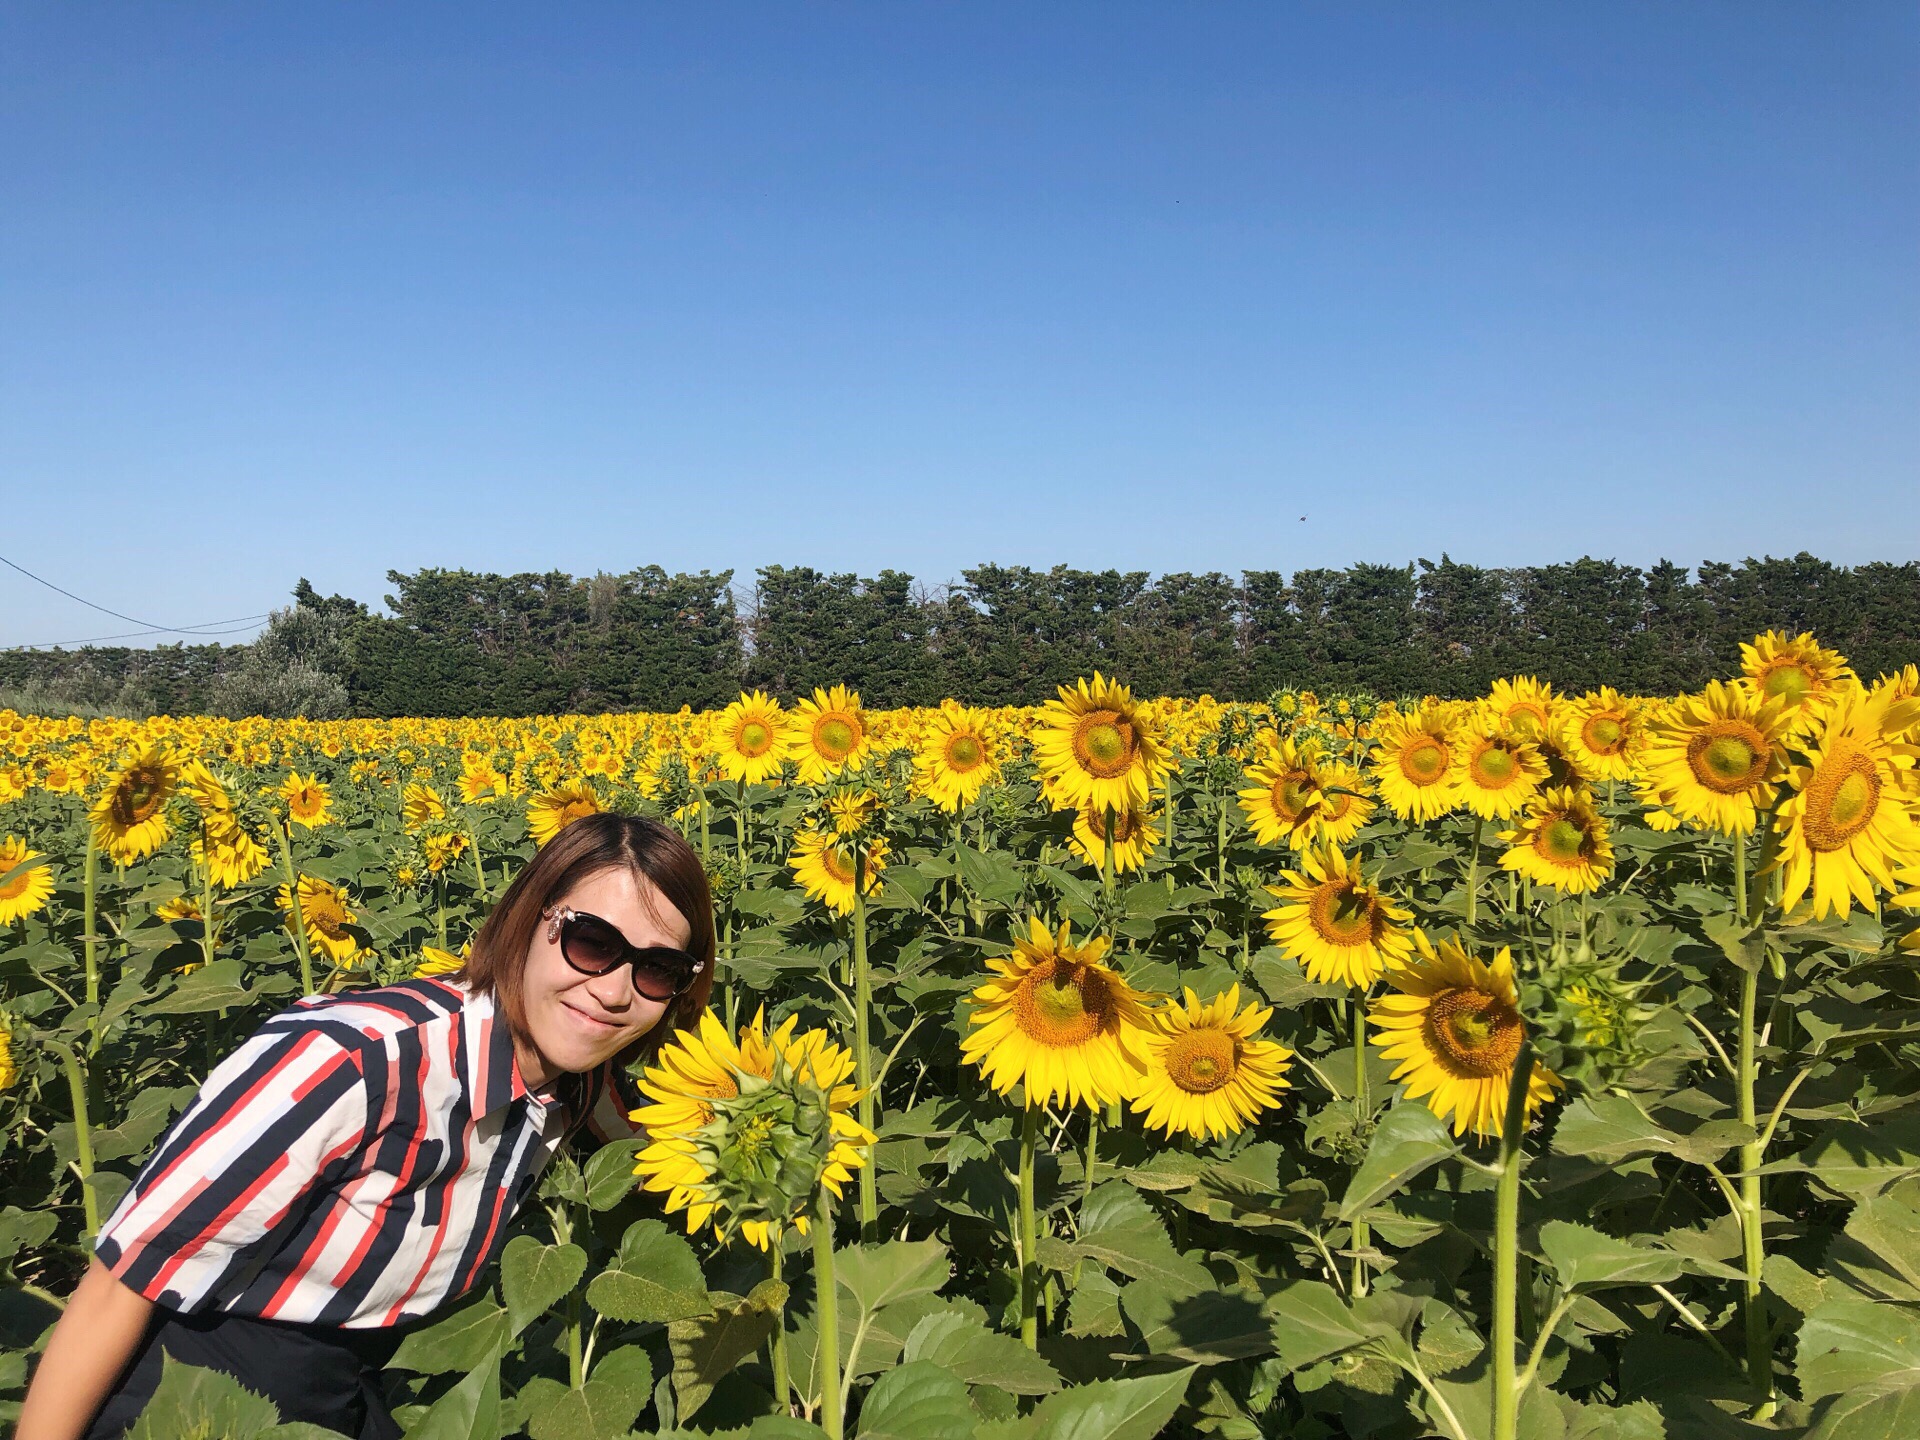 来法国南部阿尔勒，一定要去下梵高作画的向日葵🌻花田，被日本人炒到8000多万美元的作品就出自于此，感